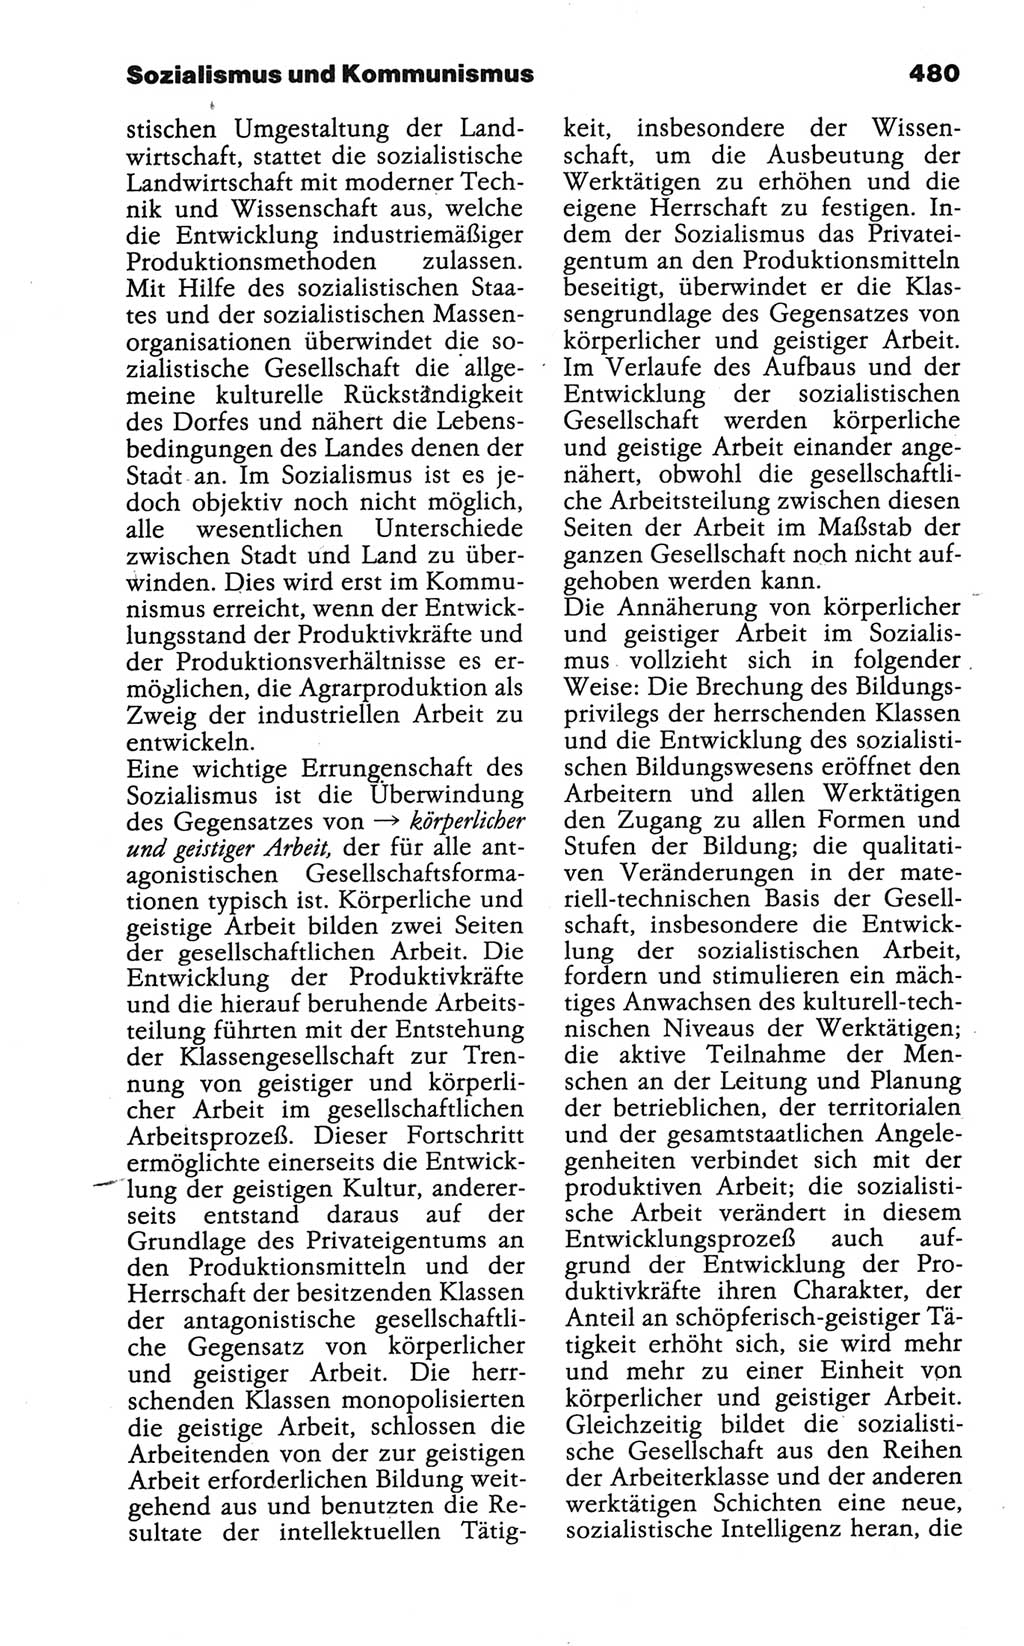 Wörterbuch der marxistisch-leninistischen Philosophie [Deutsche Demokratische Republik (DDR)] 1986, Seite 480 (Wb. ML Phil. DDR 1986, S. 480)